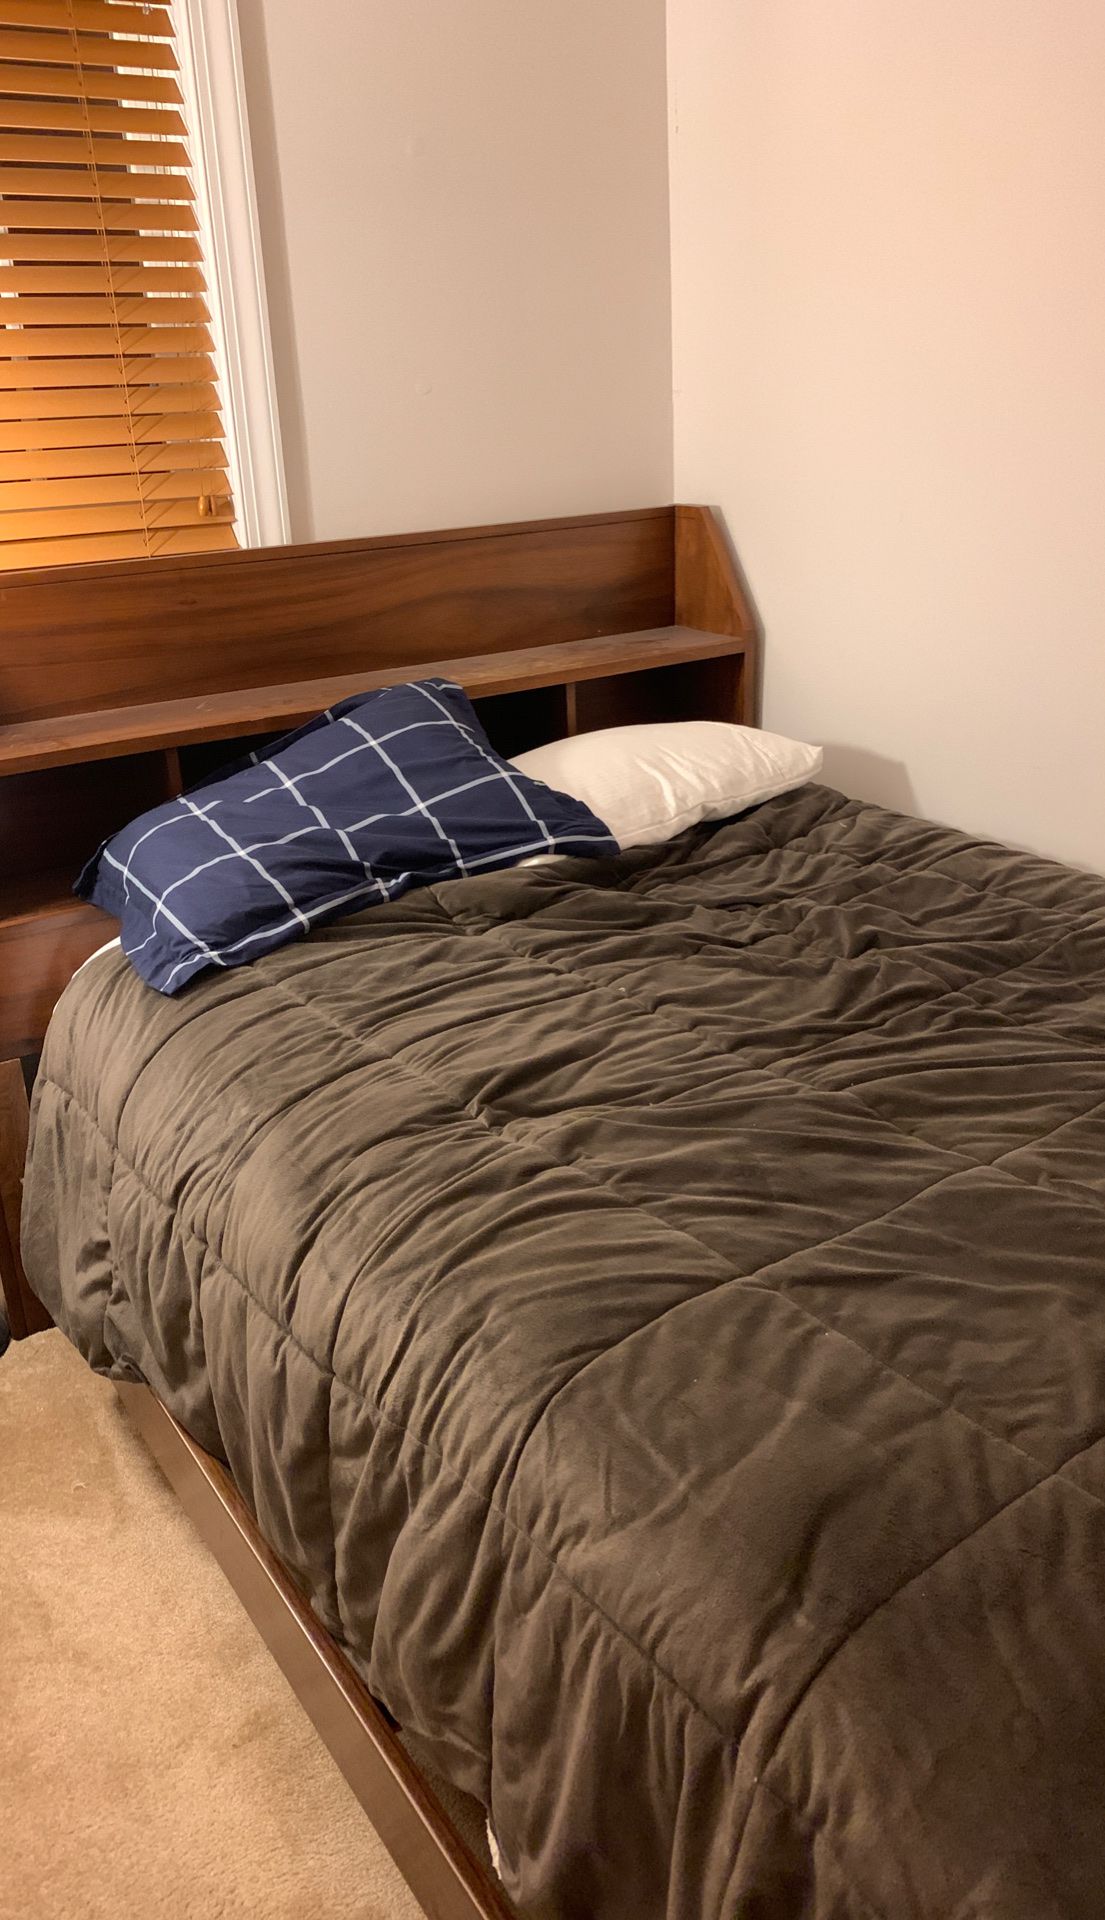 Bed, bed frame, dresser, bed side table